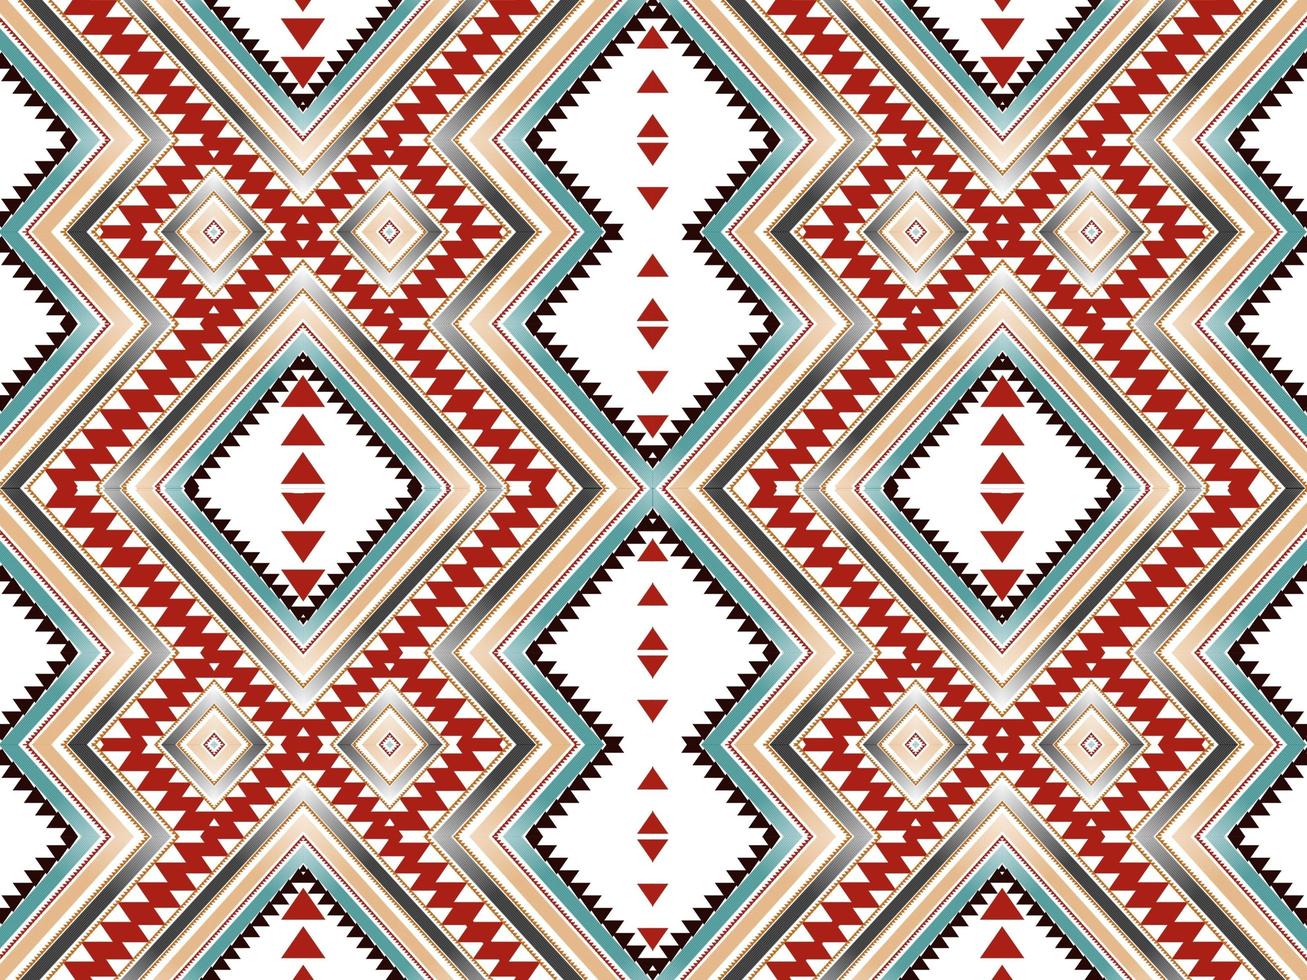 padrões geométricos estampas de tecido ikat padrões mexicanos nativos americanos abstrato foto